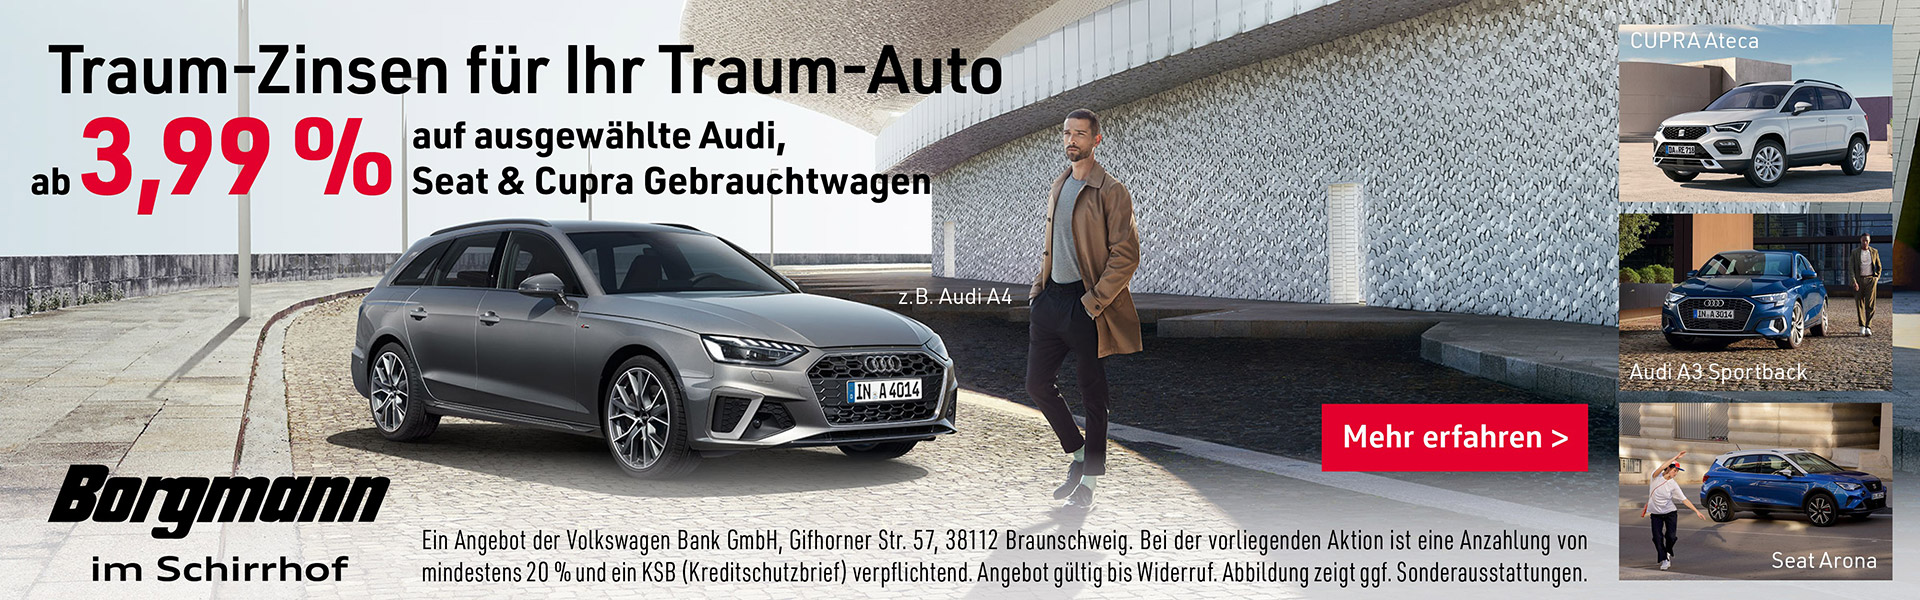 Traum-Zins ab 3,99% auf Audi, Seat & Cupra Gebrauchtwagen